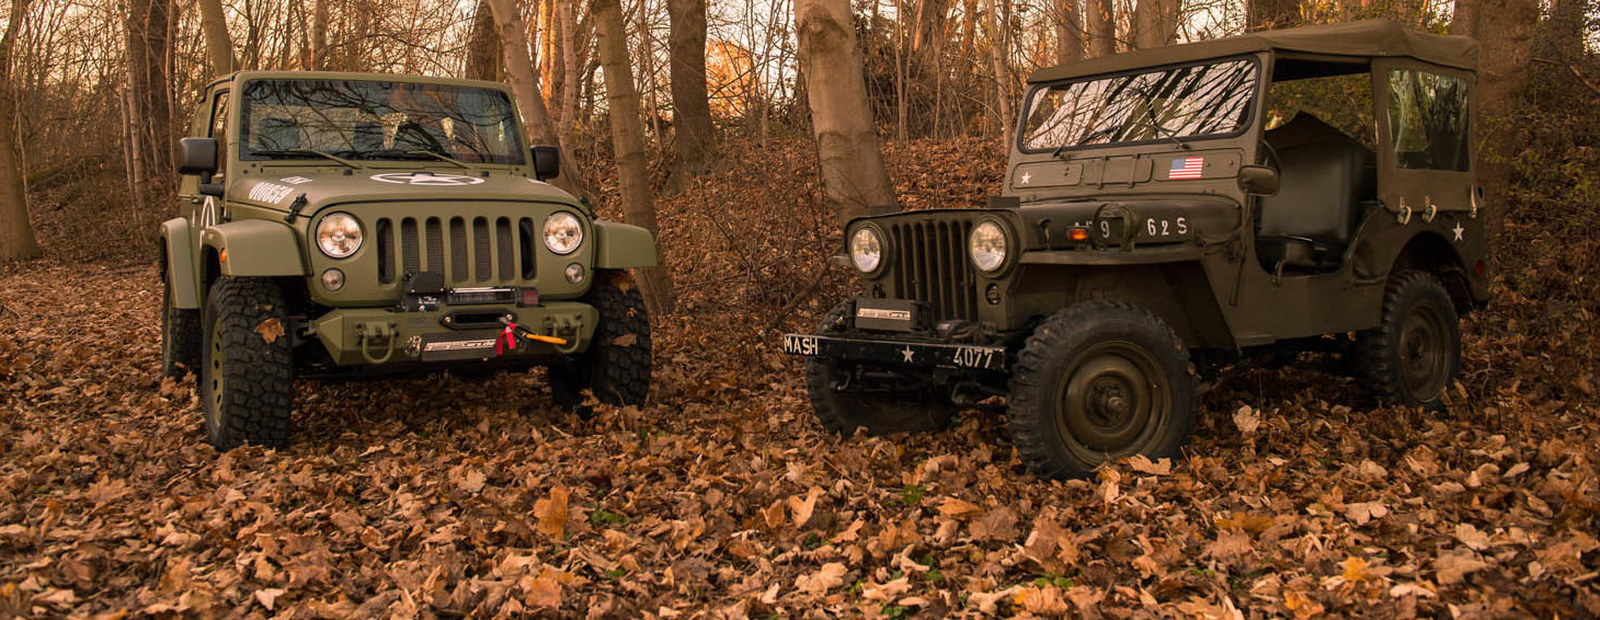 Немецкие тюнеры превратили Jeep Wrangler в старый Willys